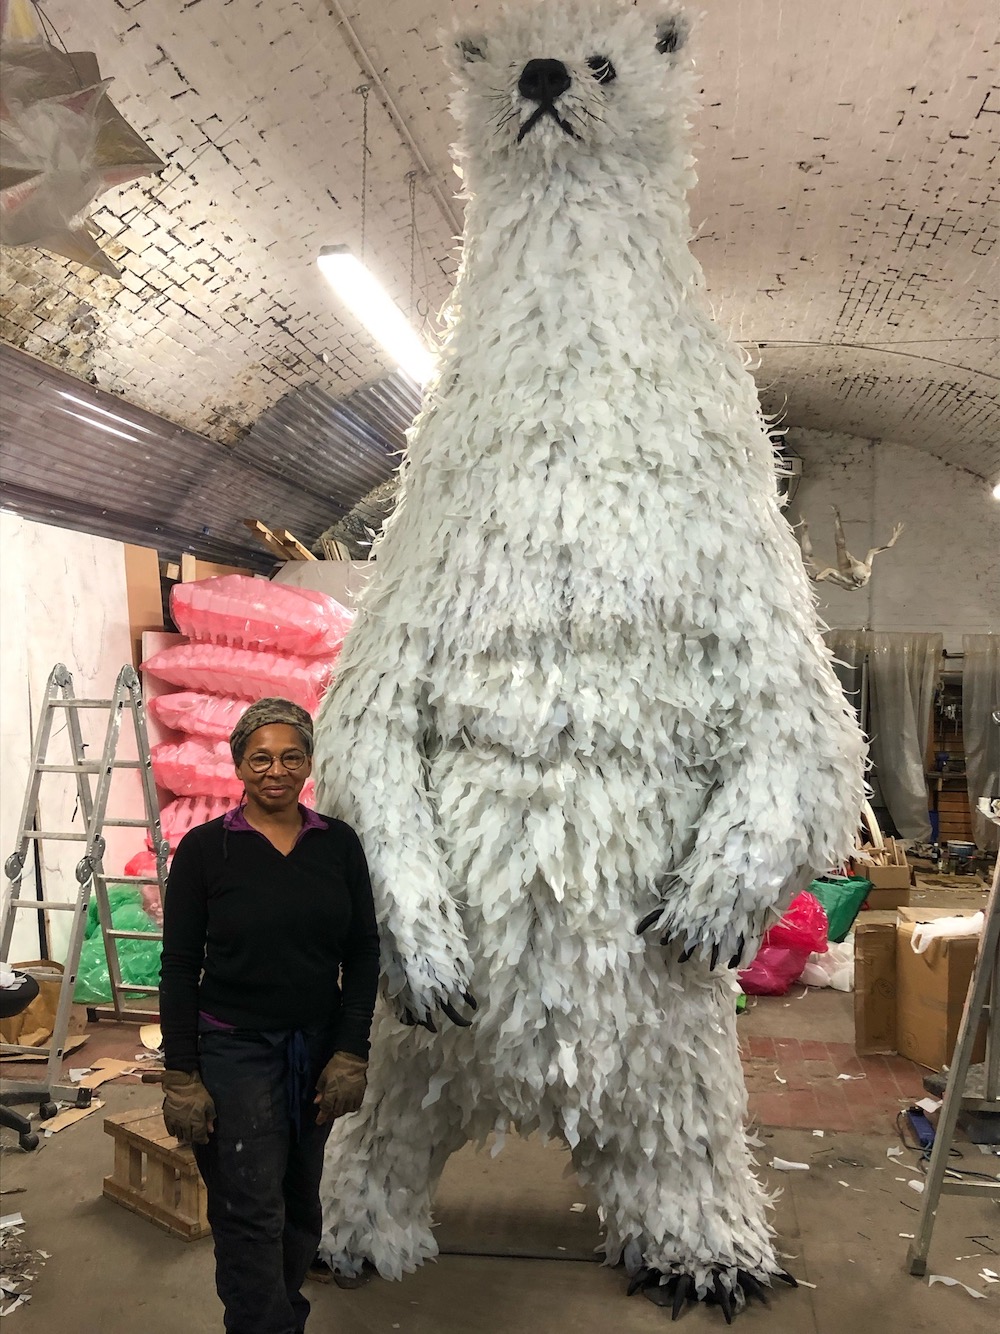 Polar Bear In The Studio (Created With 3000 Plastic Milk Bottles) by Faith Bebbington